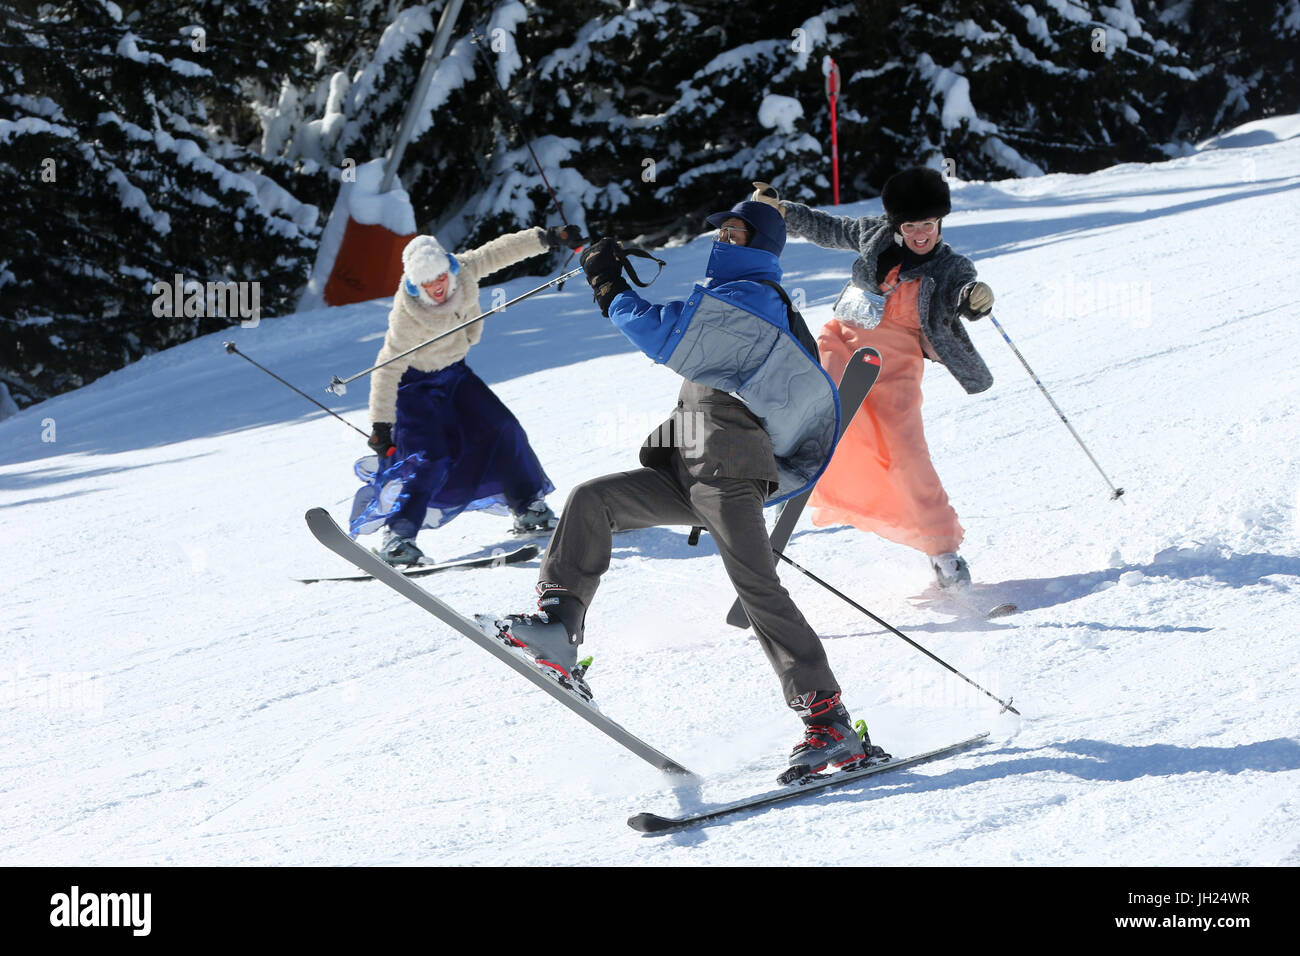 Animateurs skiant sur une piste des Alpes. France. Stock Photo